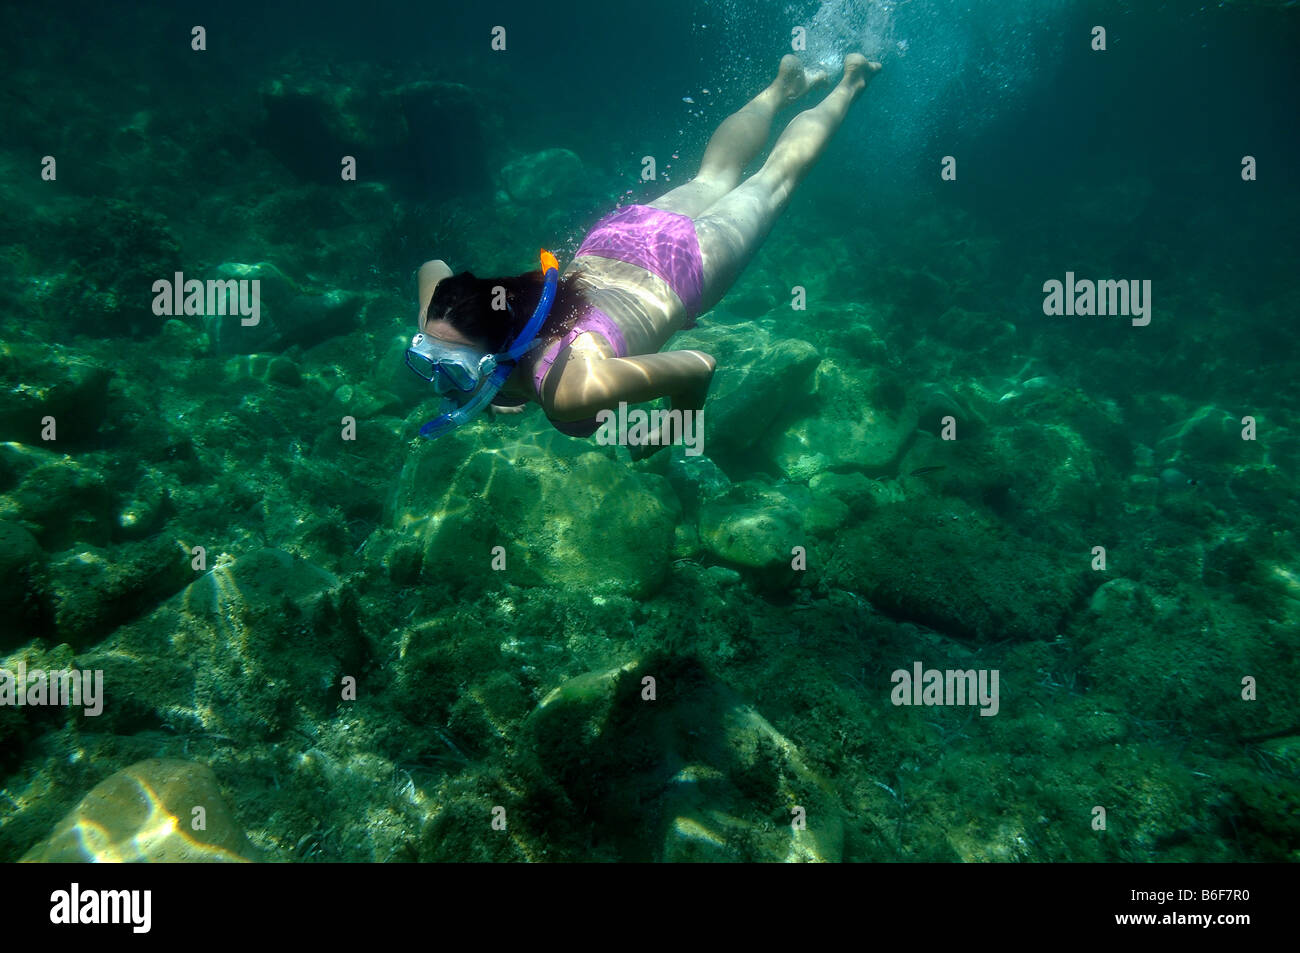 Frau mit einem Schnorchel und Tauch Brille Tauchen im Meer, Unterwasser Foto, Villasimius, Sardinien, Italien, Europa Stockfoto